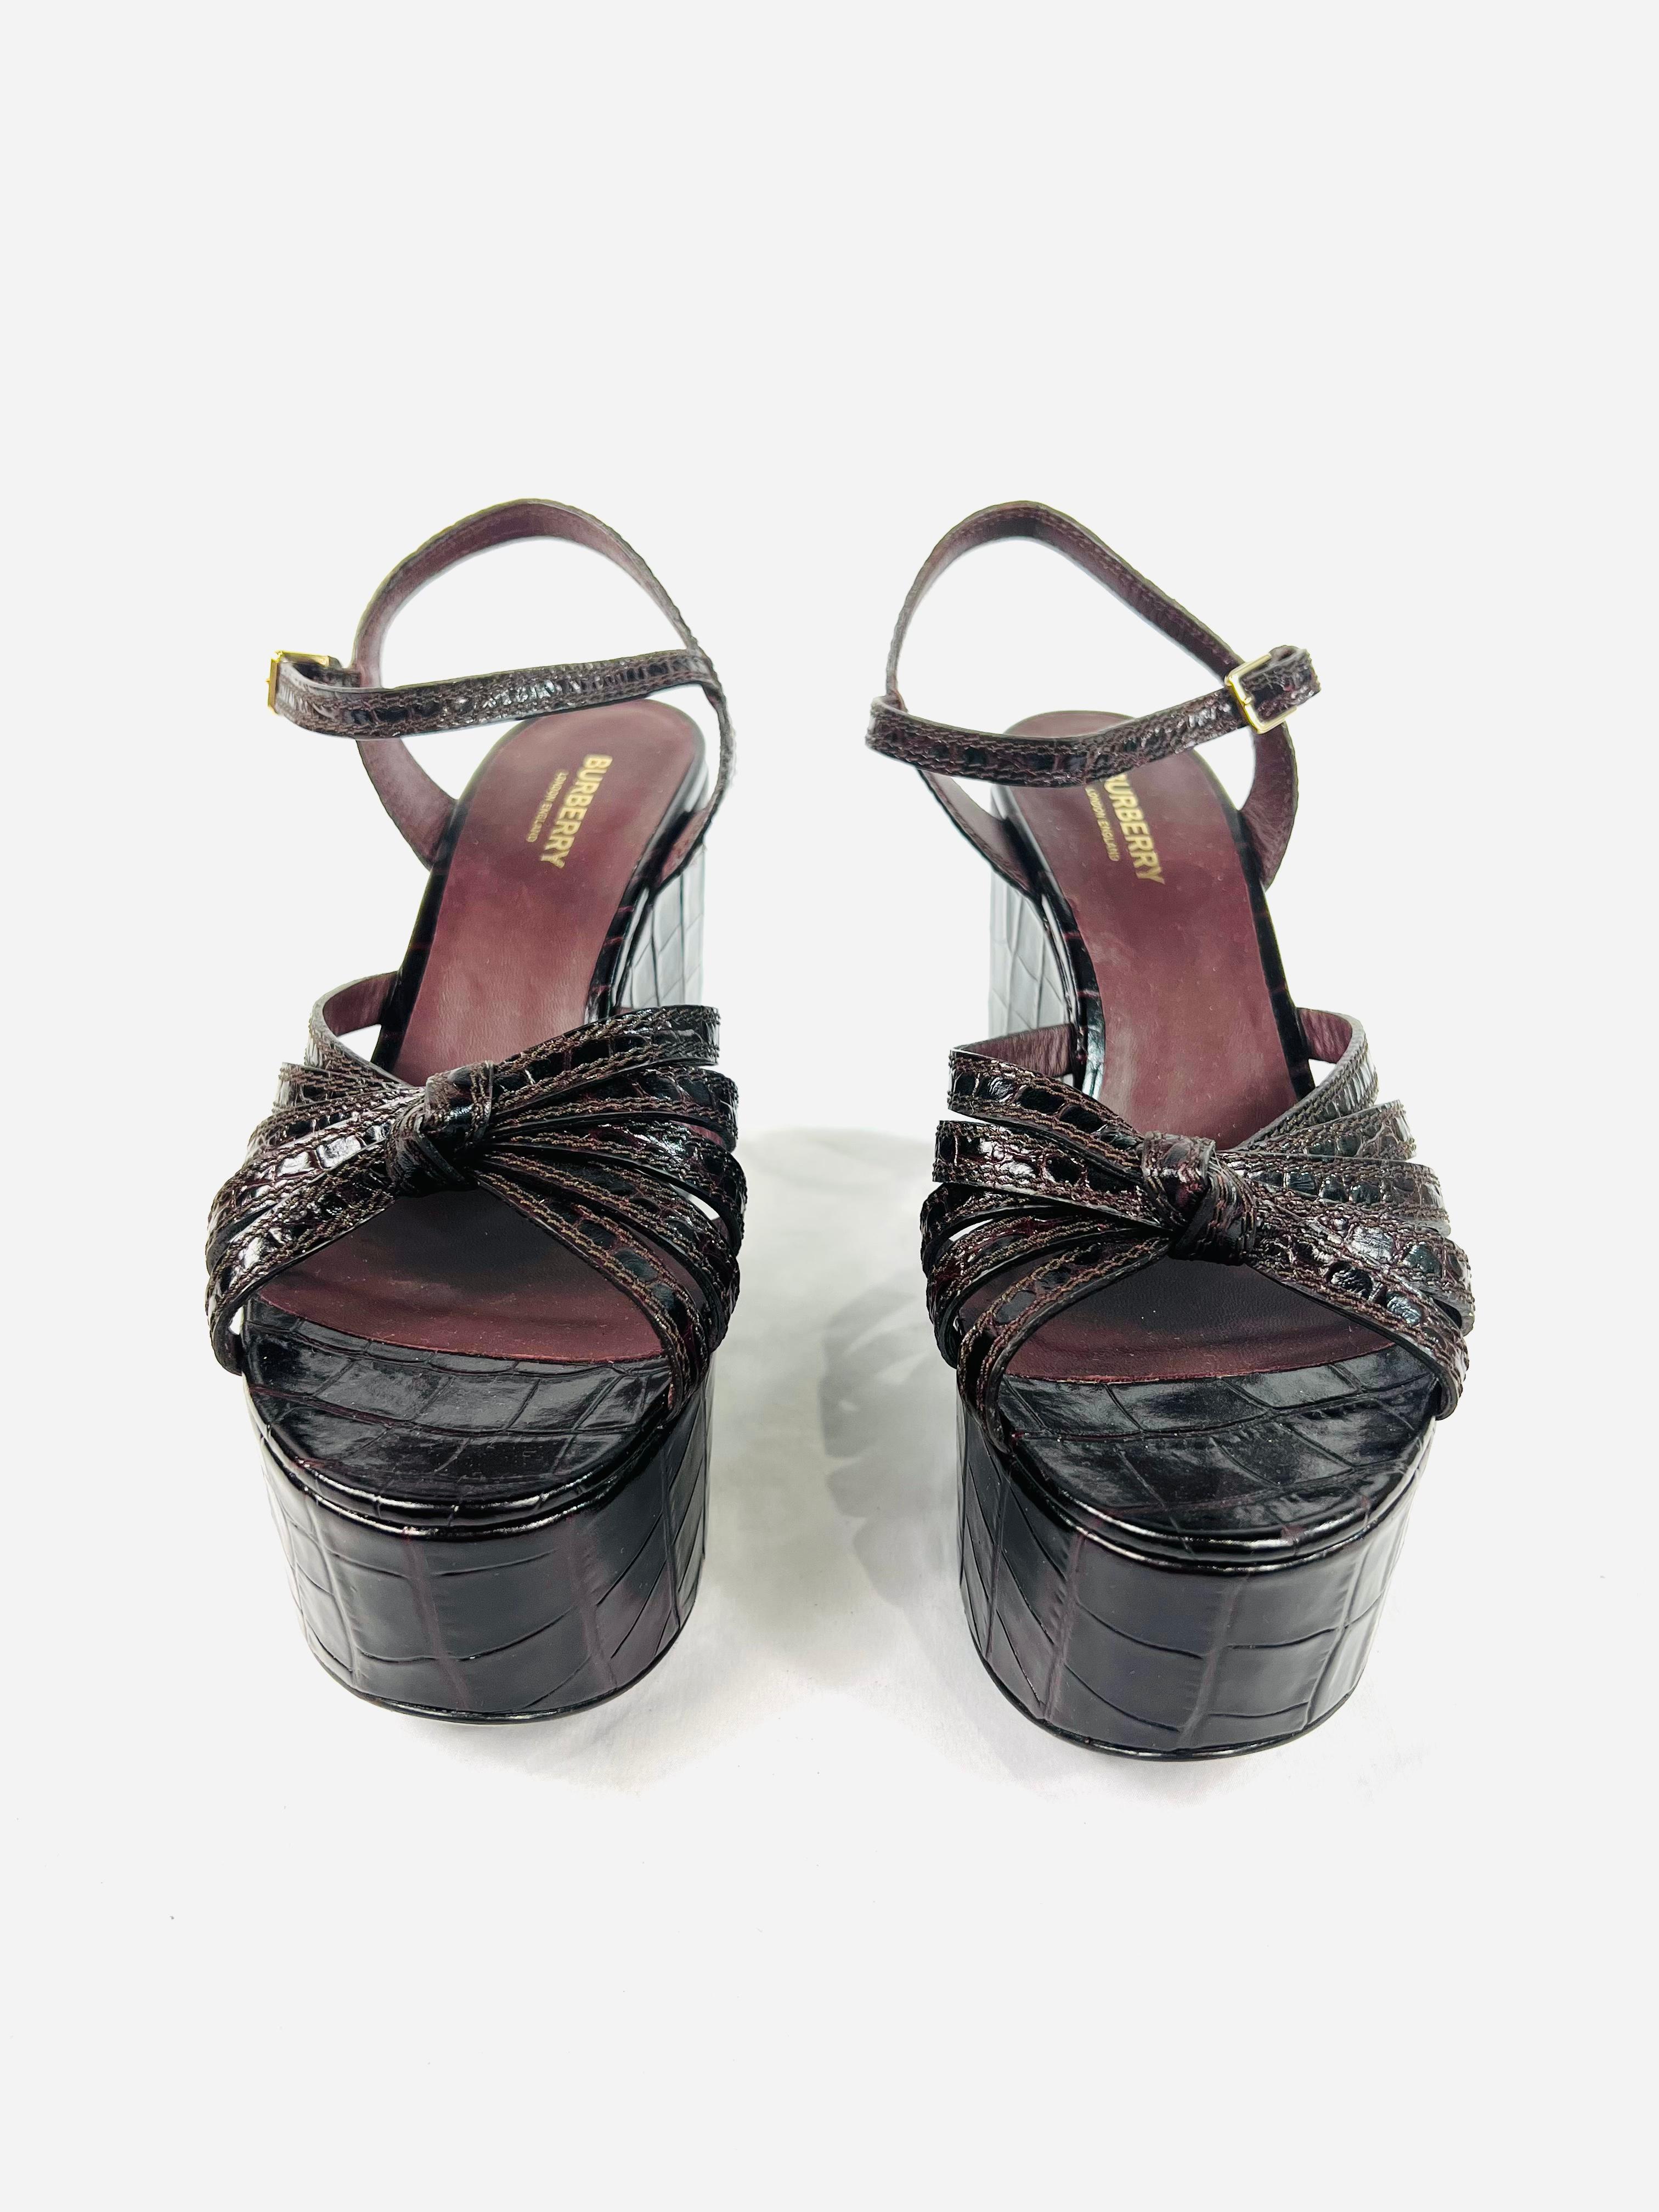 Détails du produit :

Ces chaussures sont dotées d'une plateforme, d'une fermeture à boucle et d'un design piégé.